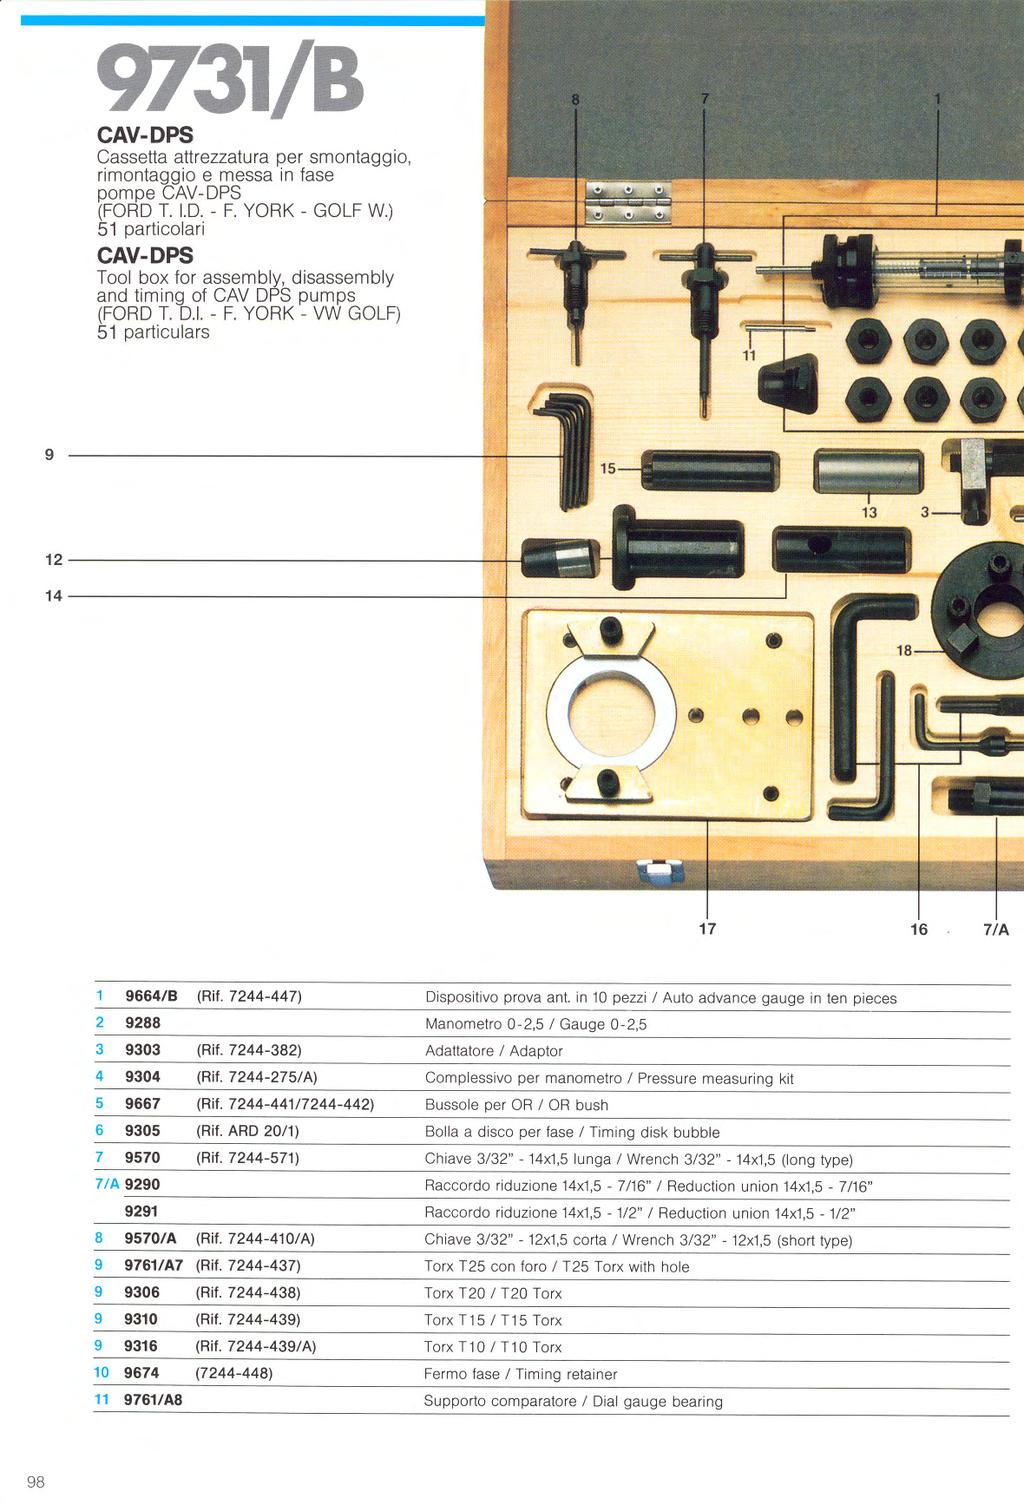 CAV-DPS Cassetta attrezzatura per smontaggio, rimontaggio e messa in fase pompe CAV-DPS (FOROT. 1.0.- F.